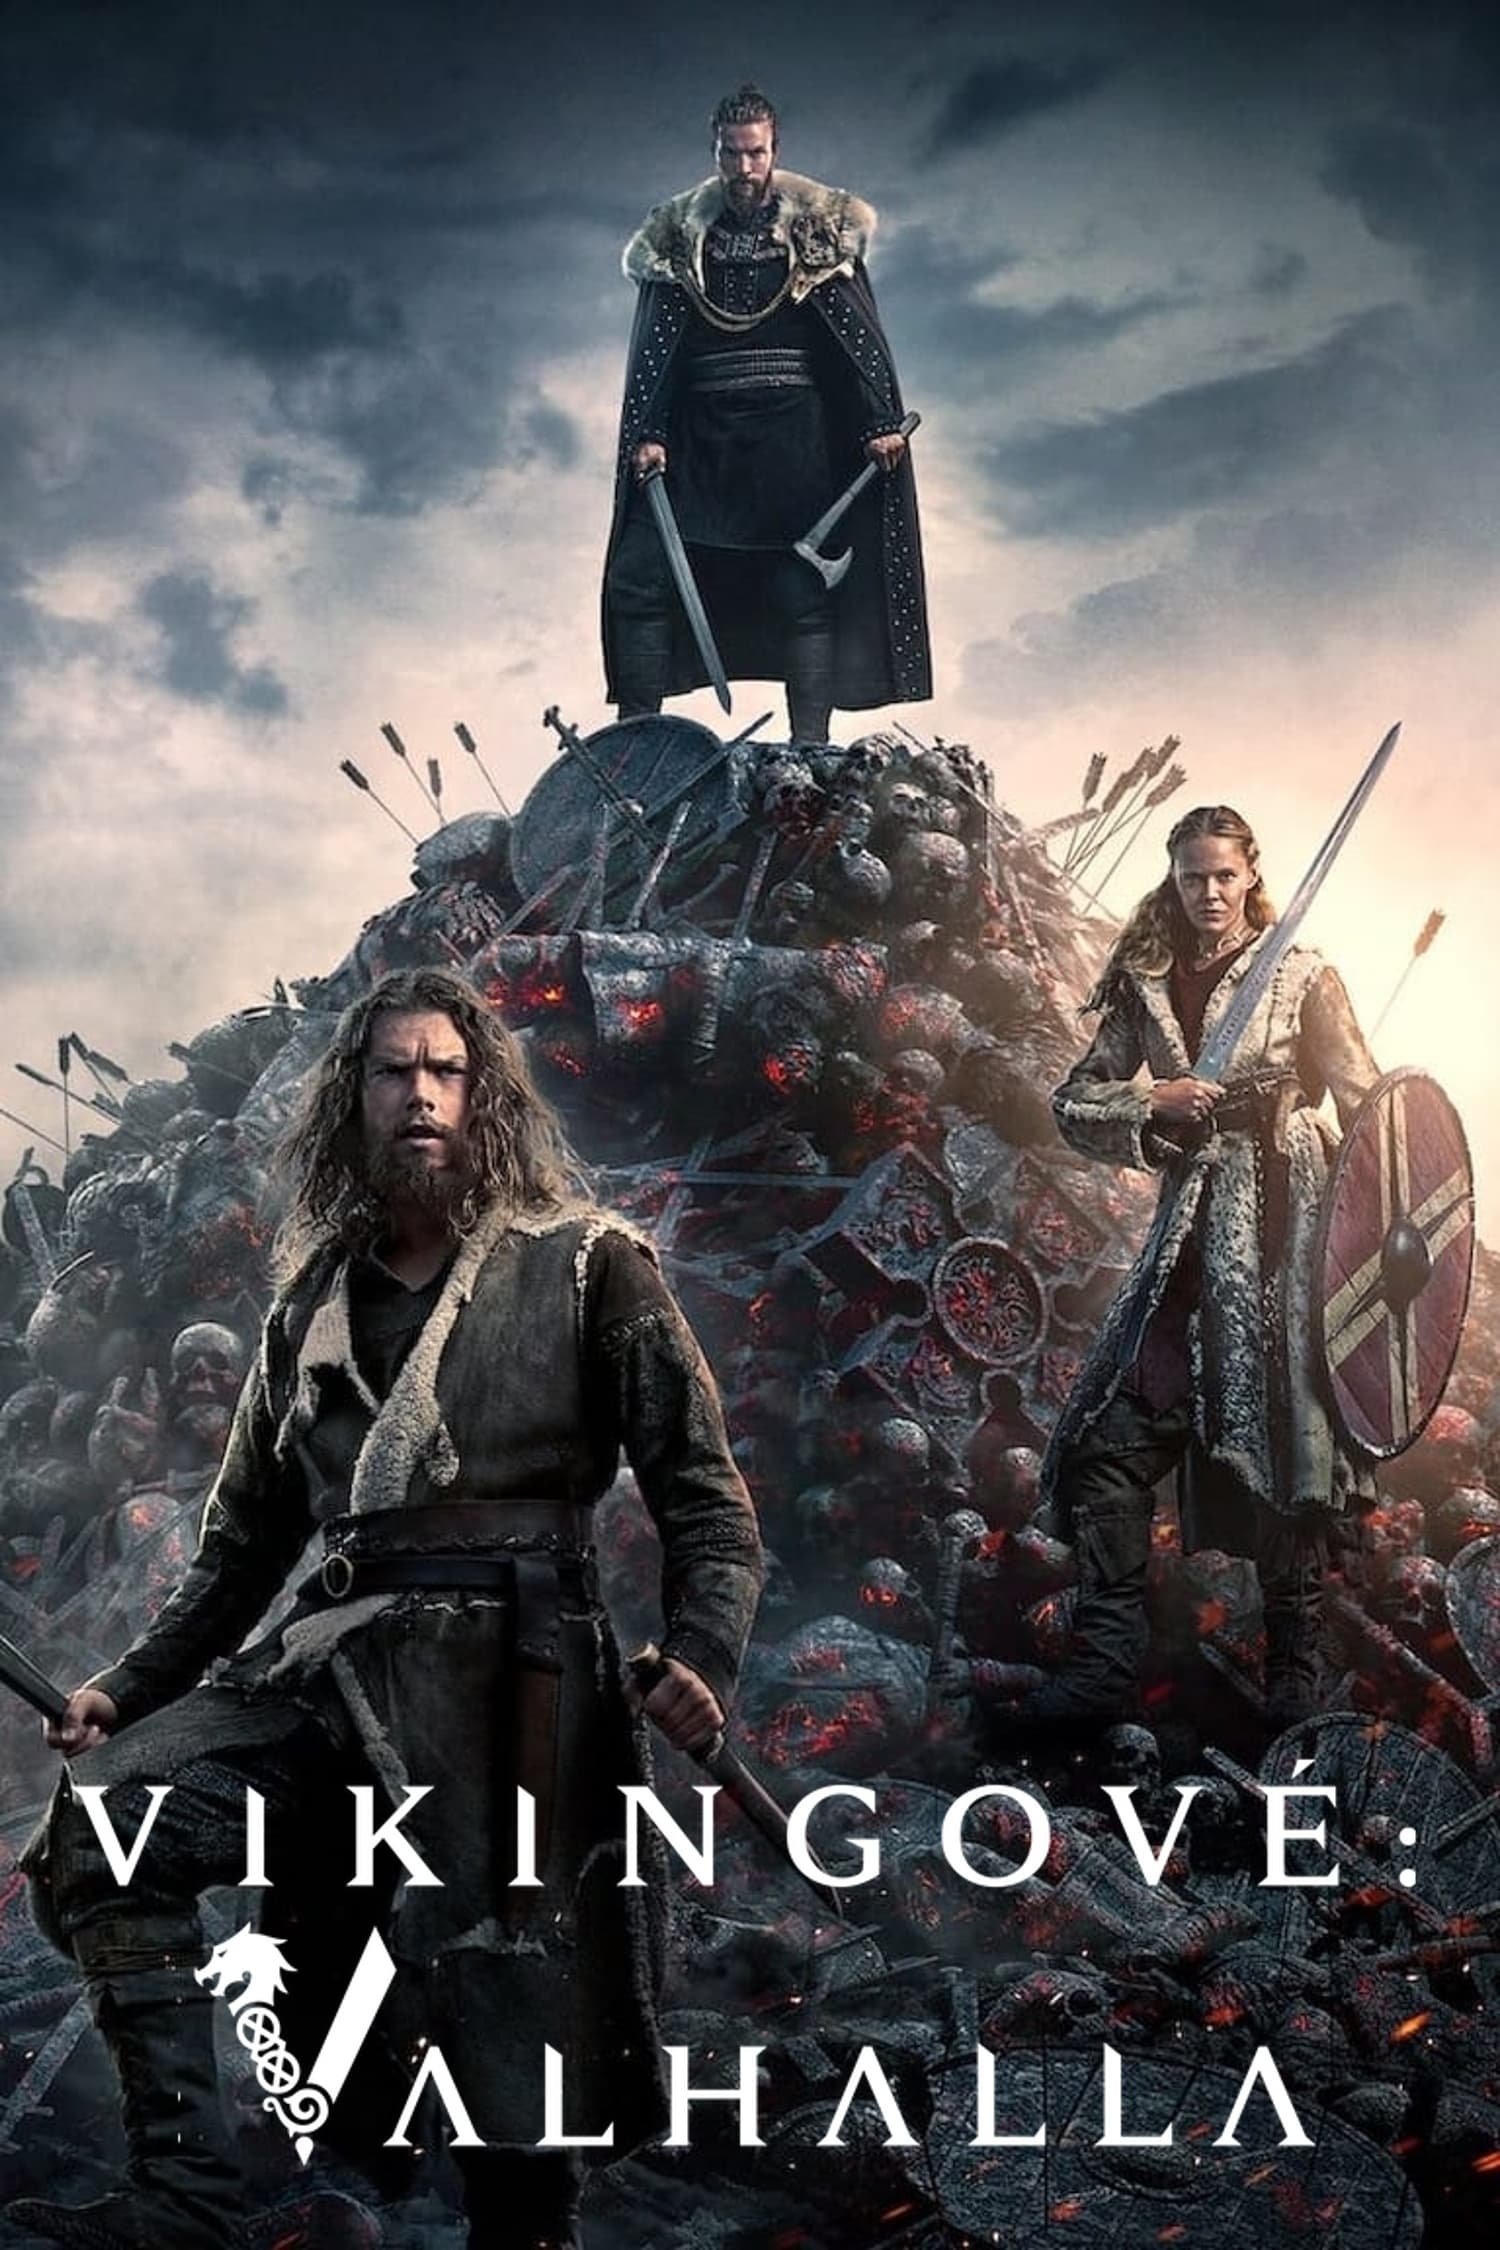 Plakát pro film “Vikingové: Valhalla”